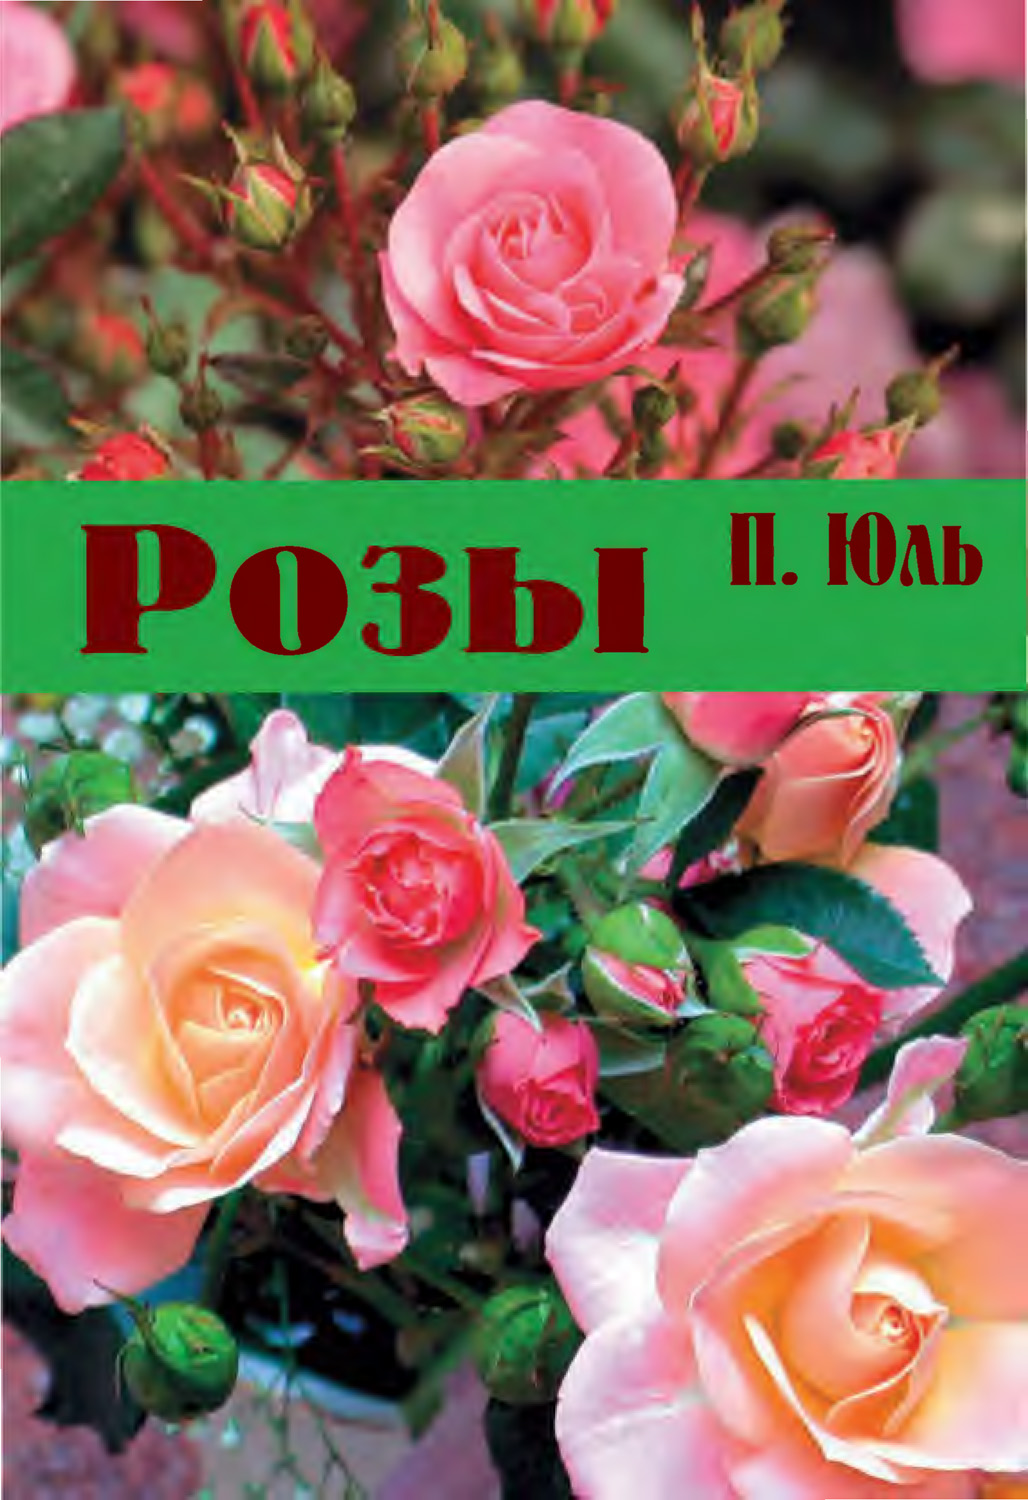 Книга Розы из серии , созданная Петр Юль, может относится к жанру Сад и Огород, Хобби, Ремесла. Стоимость электронной книги Розы с идентификатором 8909322 составляет 14.99 руб.